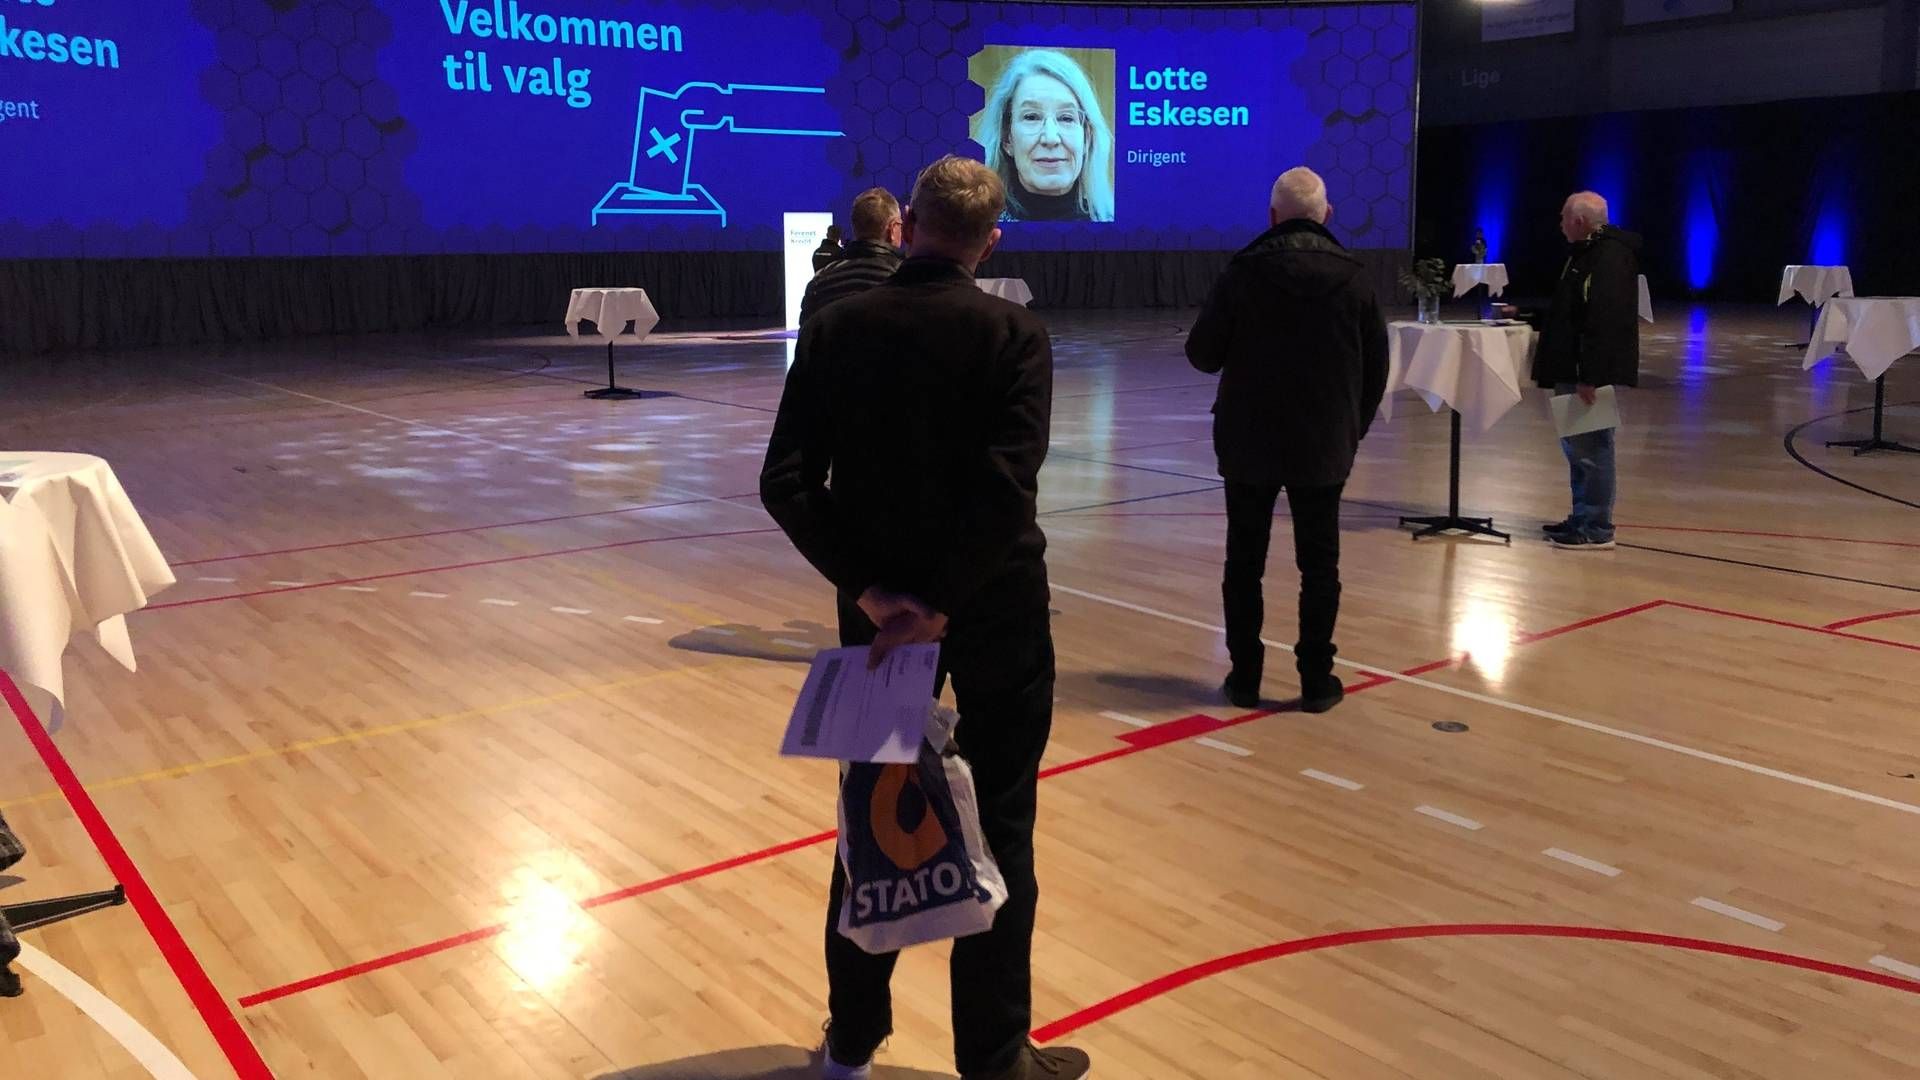 Sådan så det ud sidste år, da Forenet Kredit kort før coronanedlukningen i marts afholdt valg til repræsentantskabet i Roskilde. | Foto: Christian Bjerre